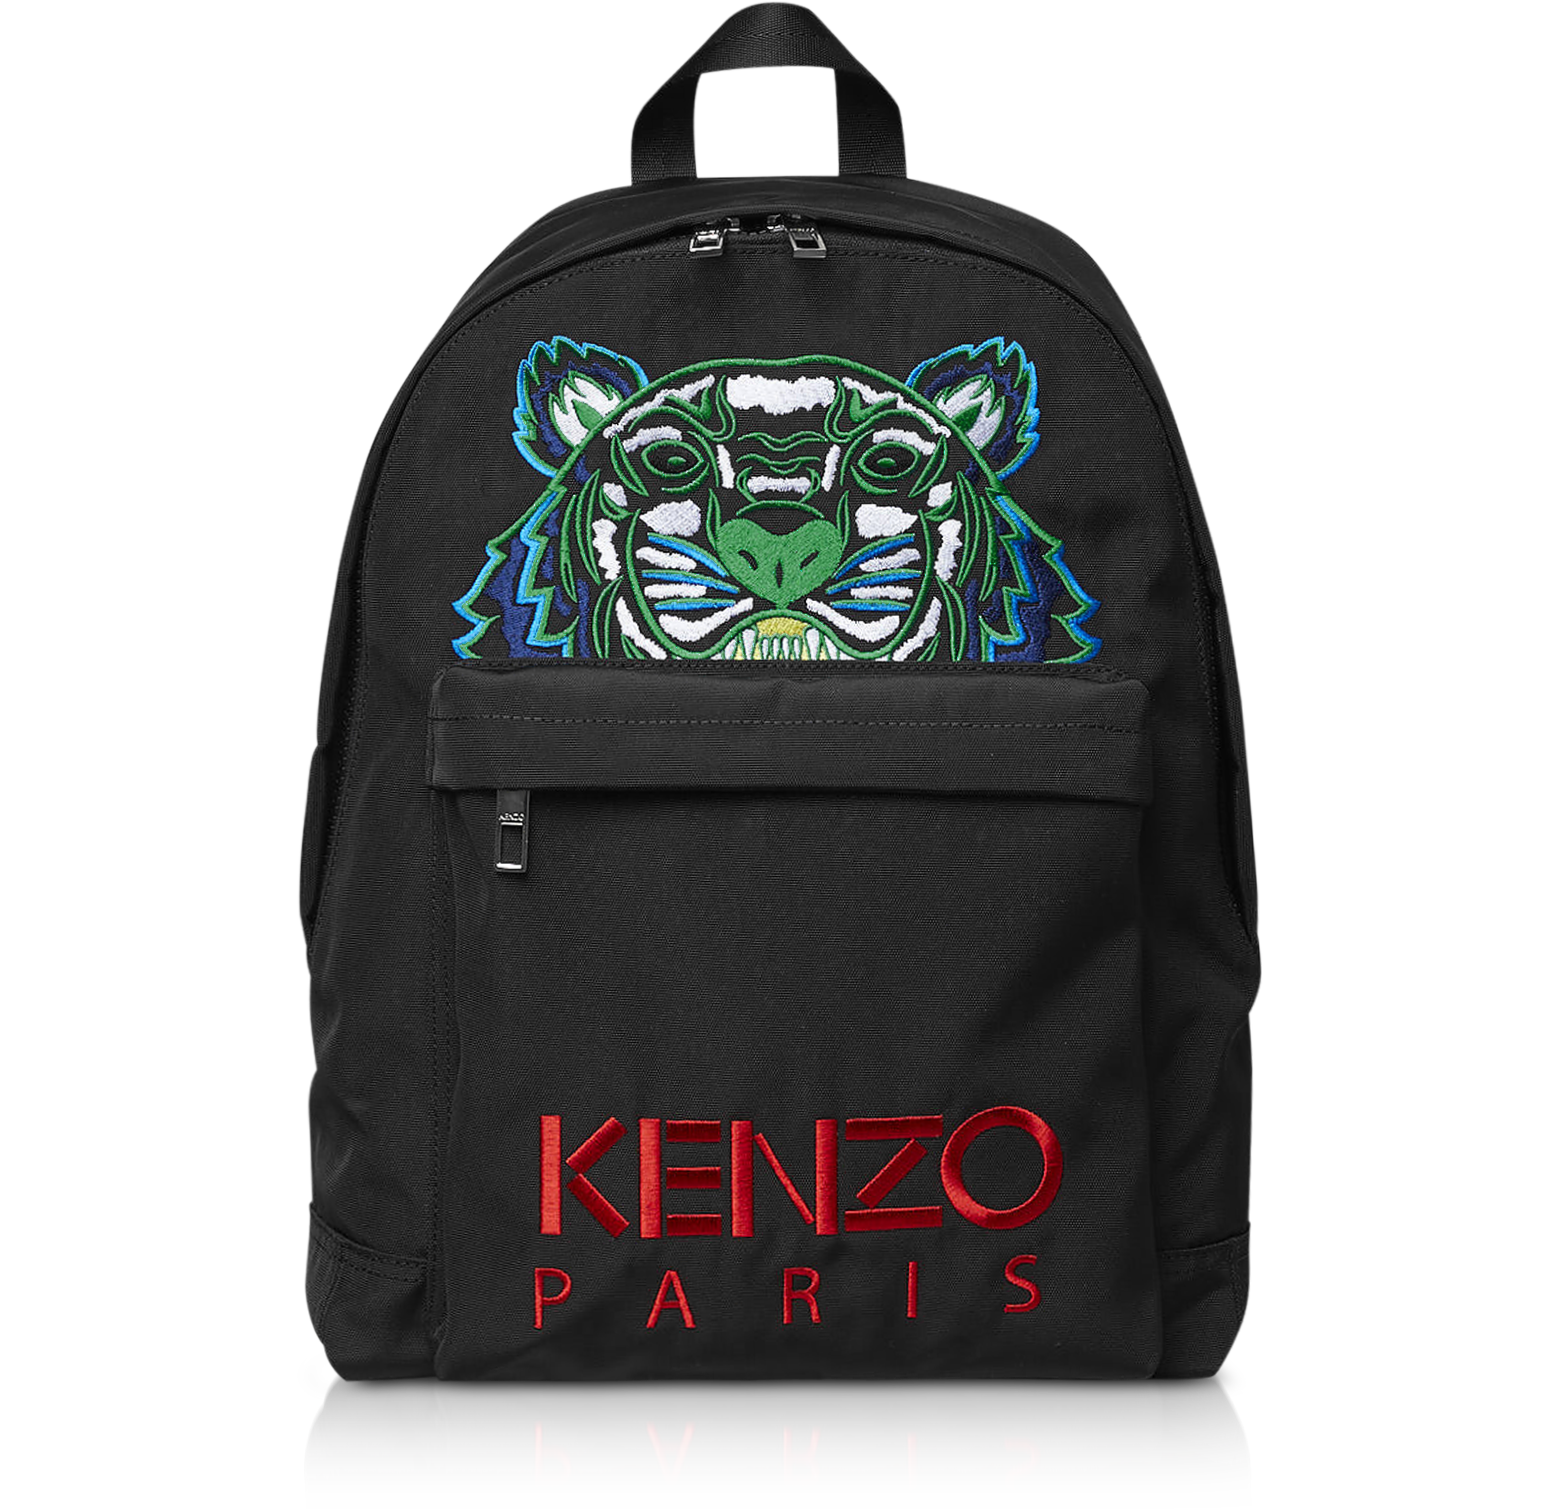 kenzo large tiger backpack